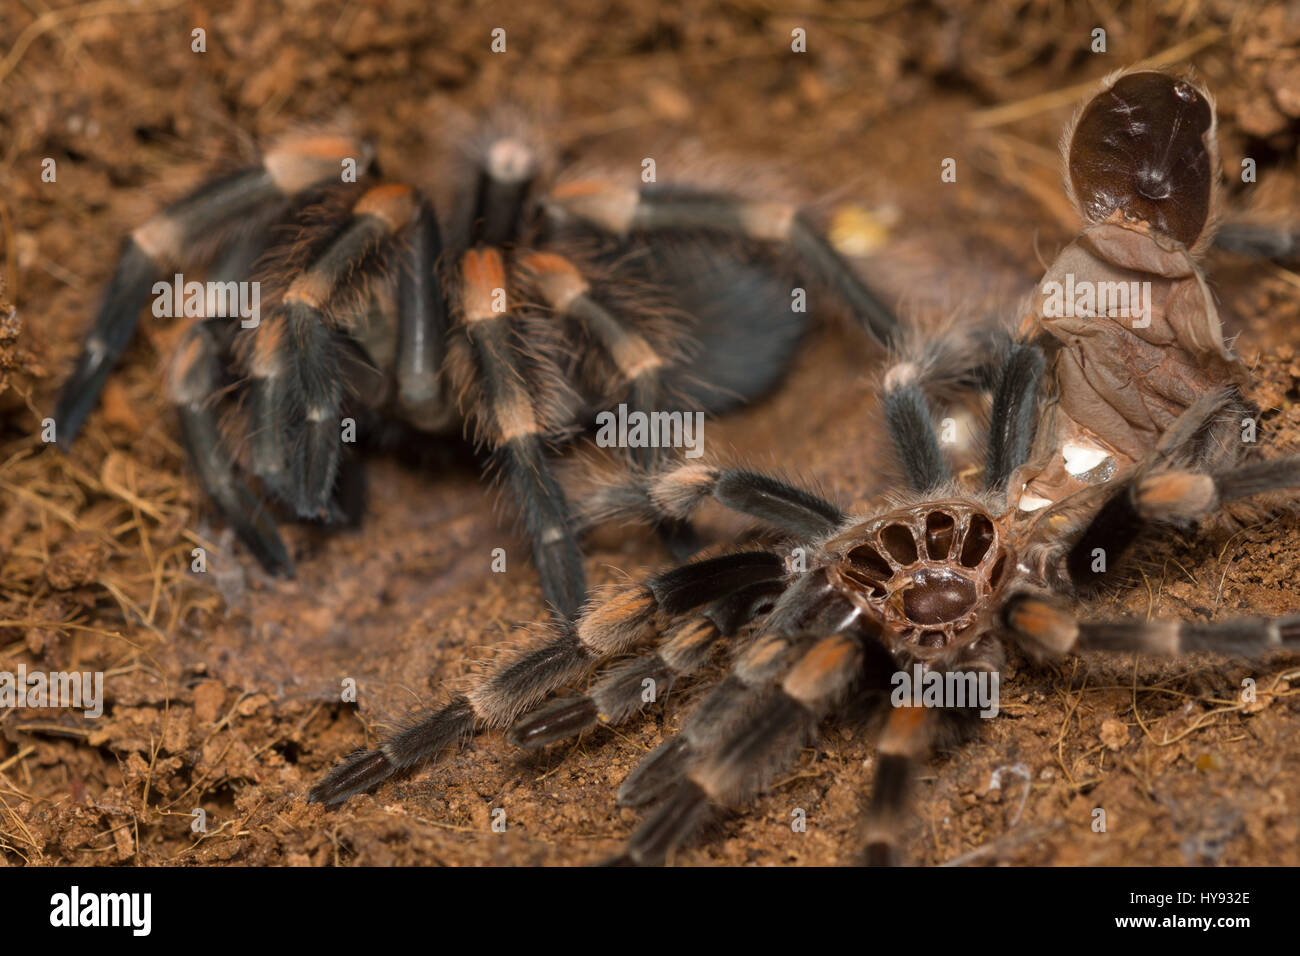 Mexican redknee tarantula shedding it's skin, Brachypelma smithi Stock  Photo - Alamy